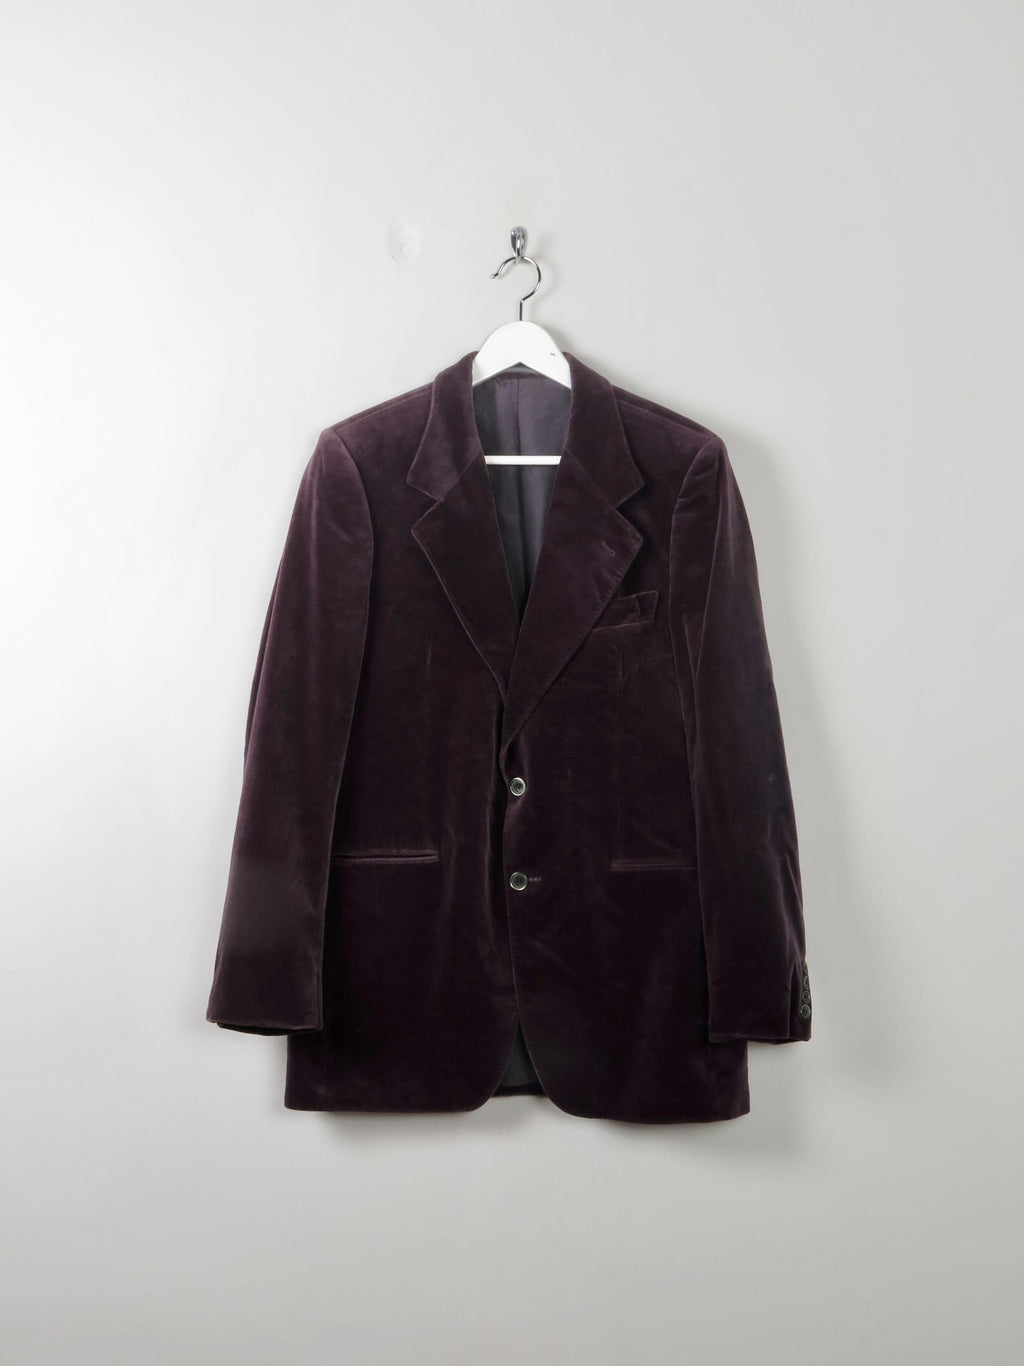 Men's Vintage Grape Velvet Jacket 38/40/S - The Harlequin